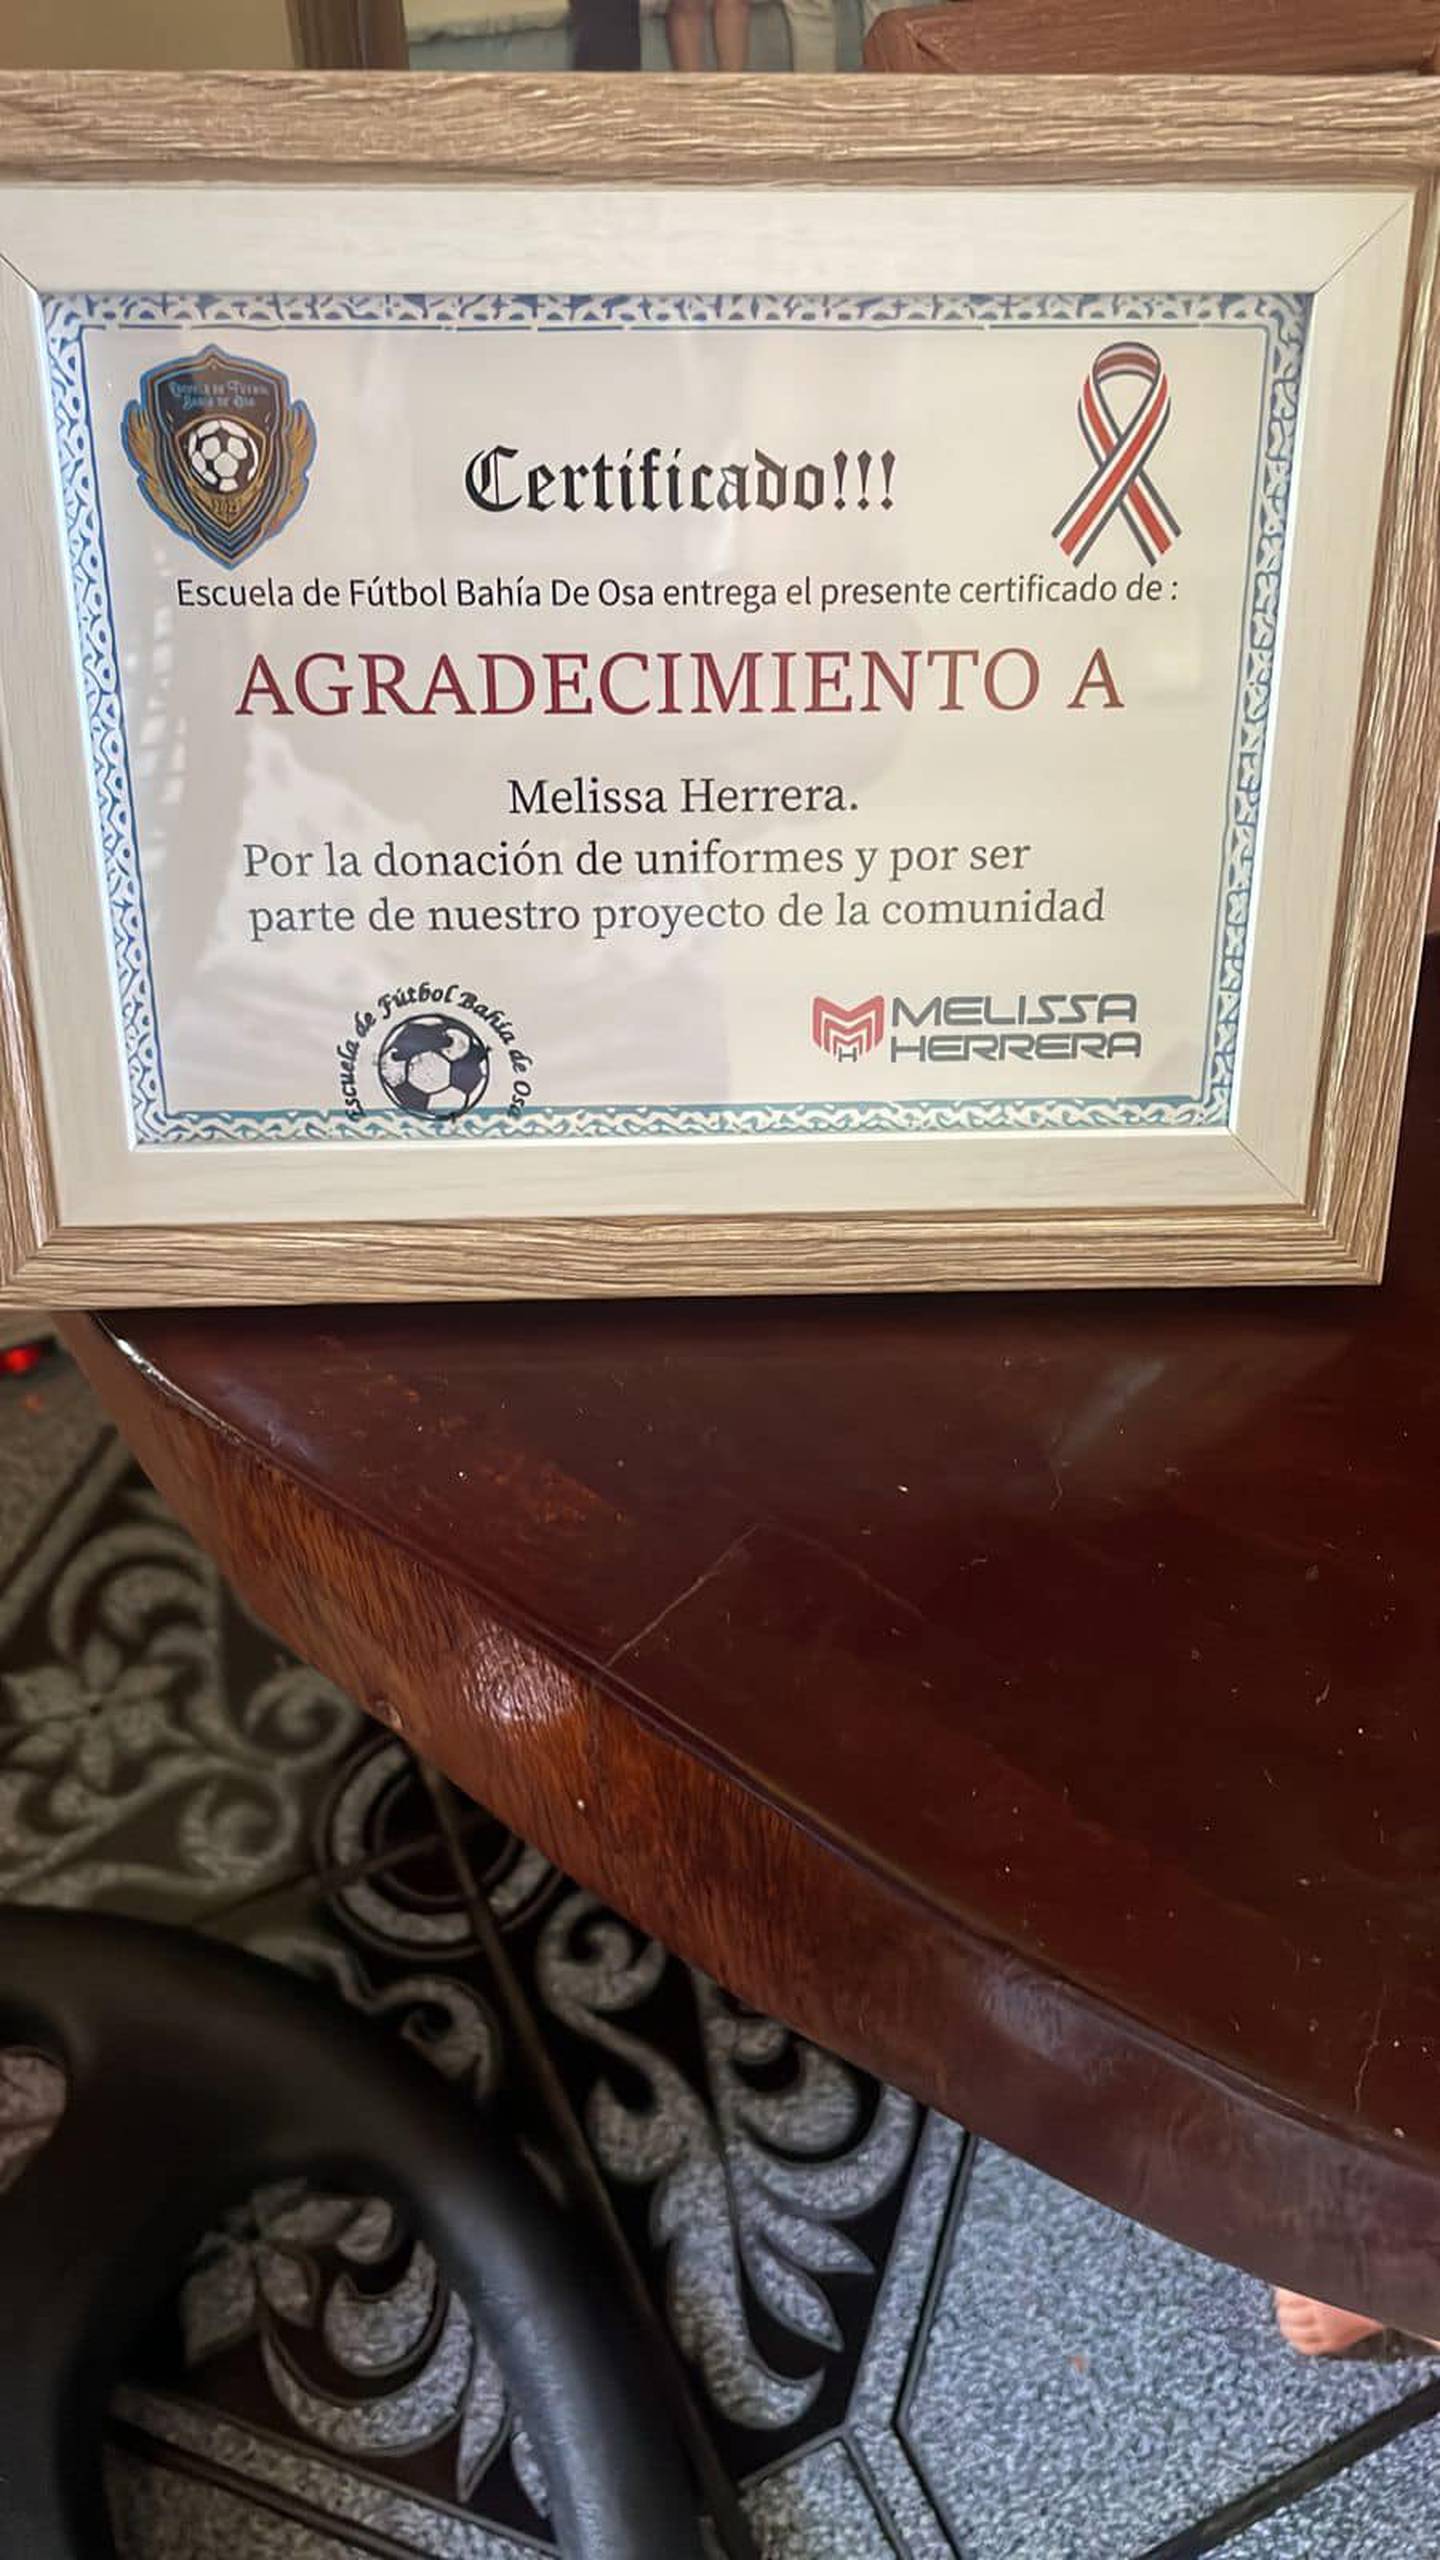 Melissa Herrera, donación, certificado, escuela de fútbol bahía de osa